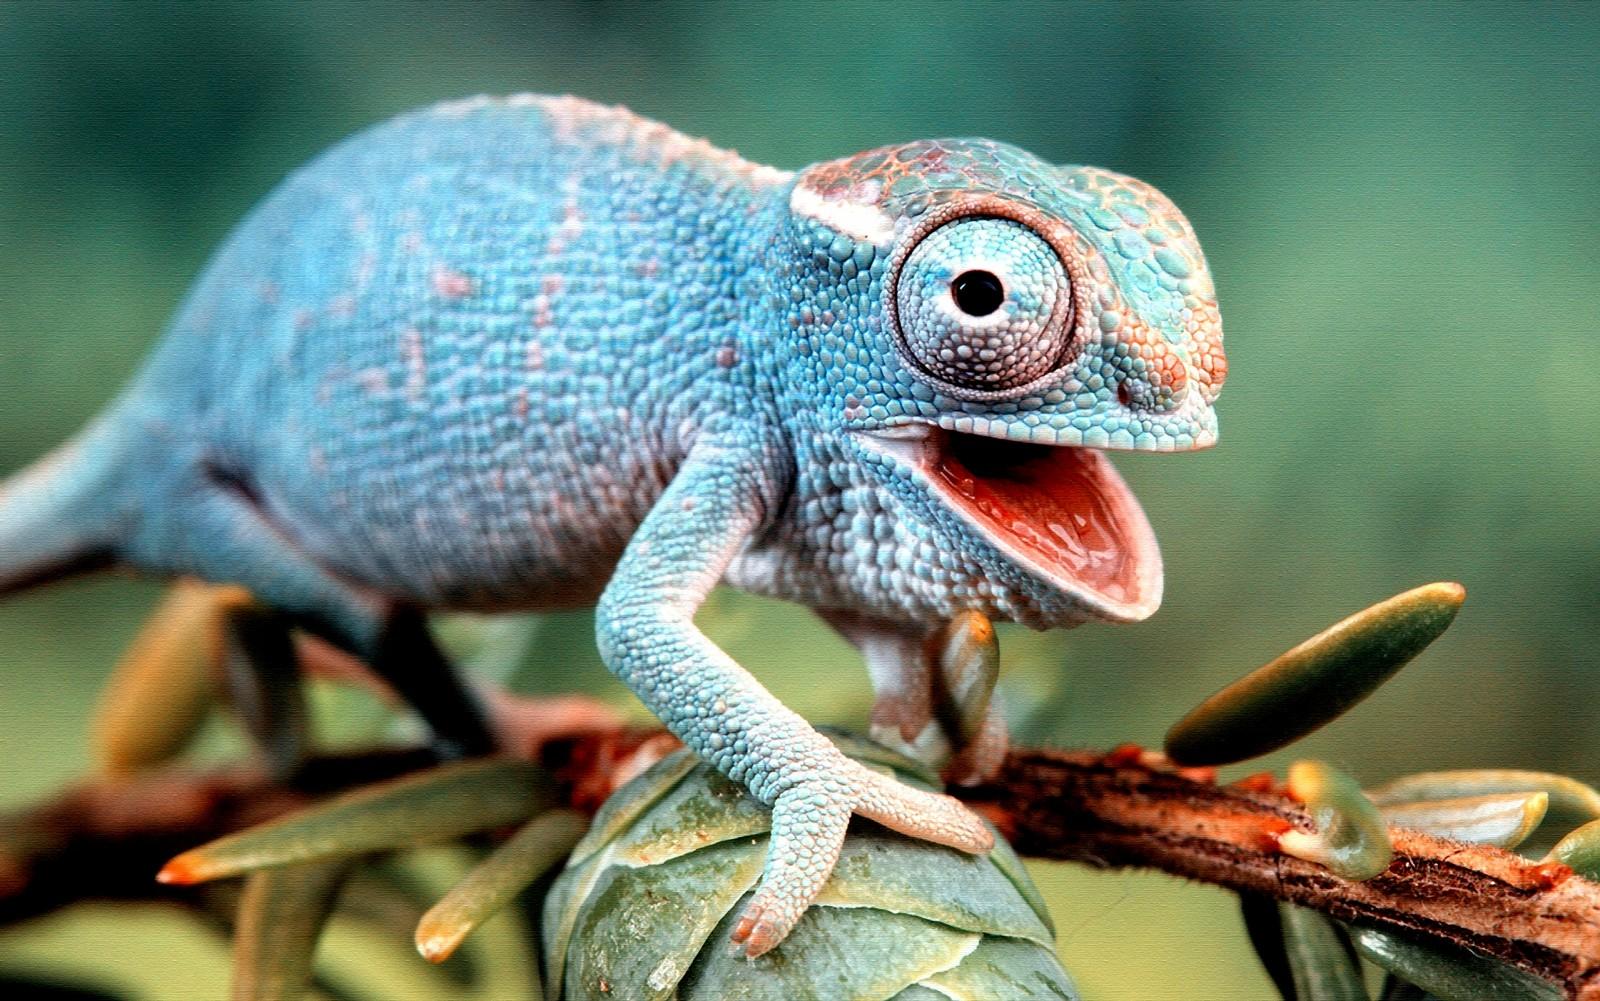 Blue Chameleon Lizard # 1600x1001. All For Desktop